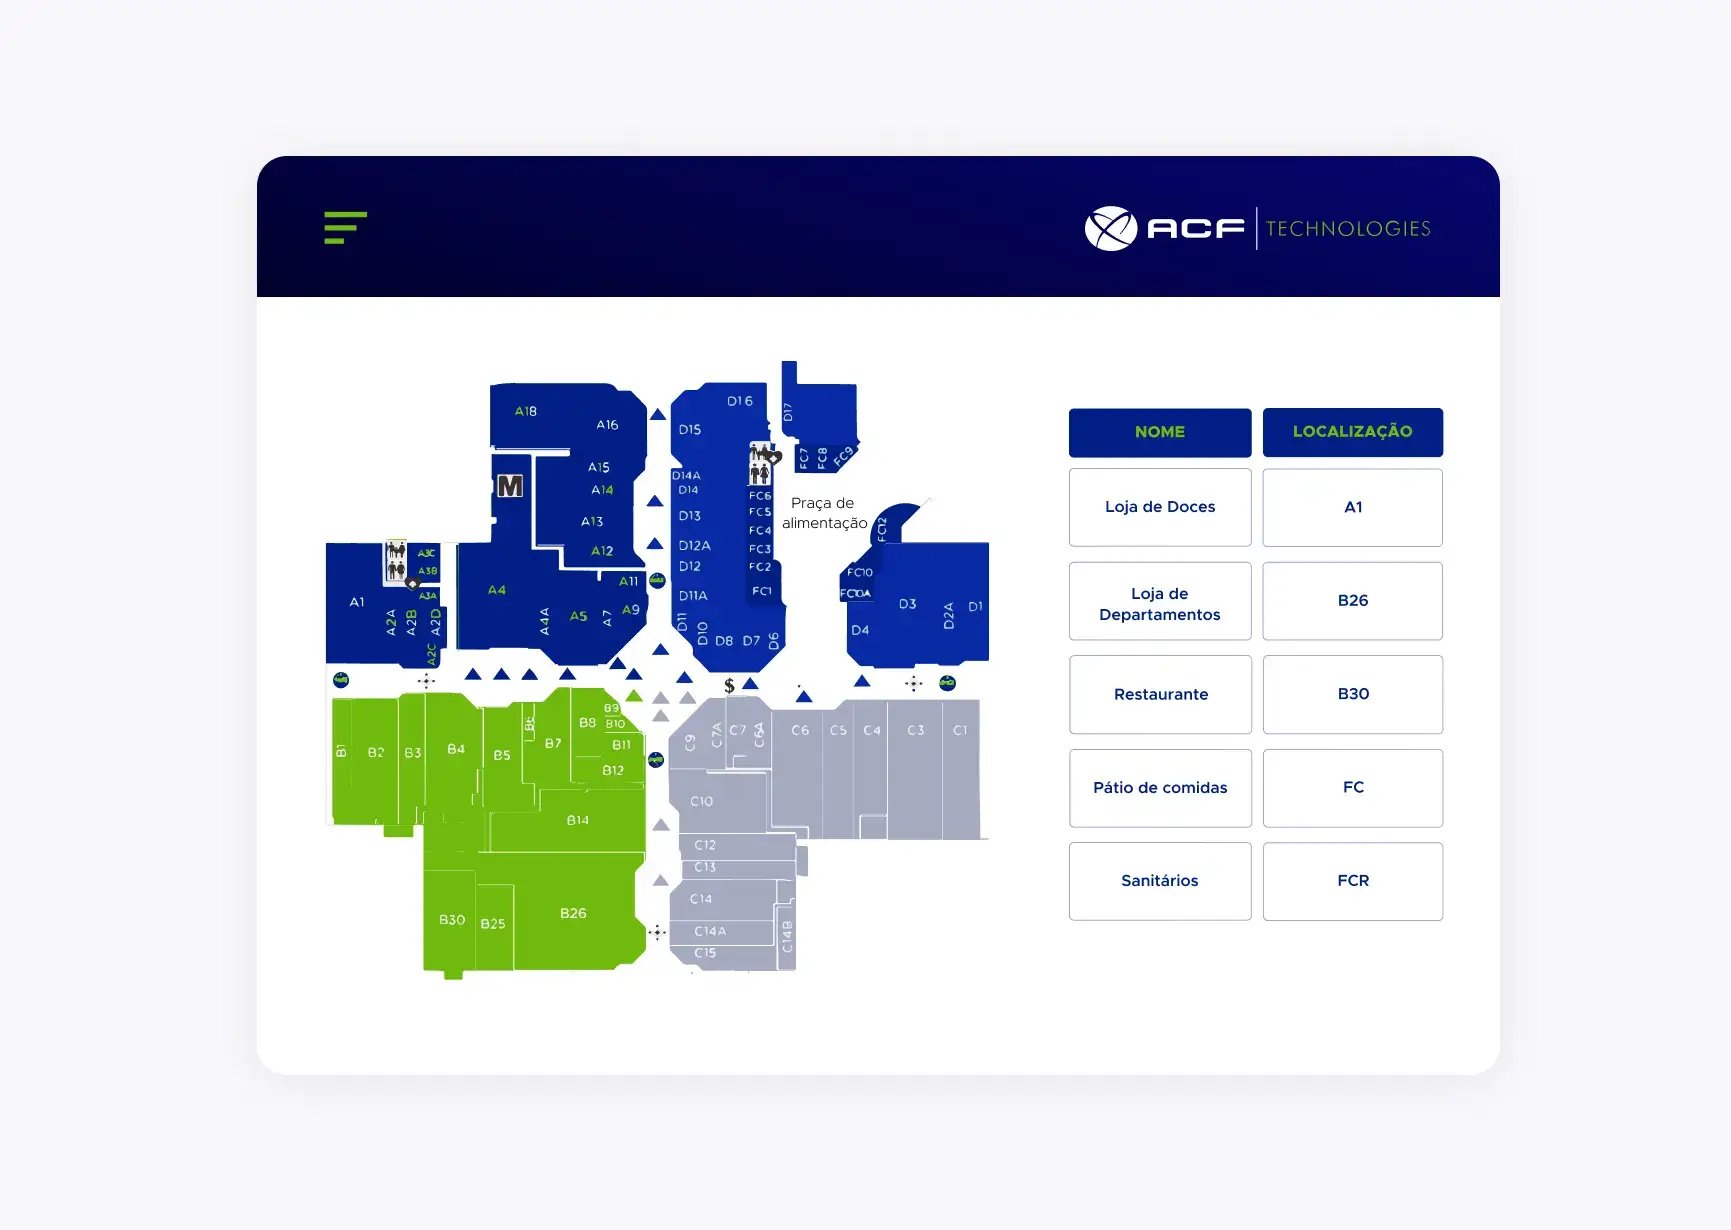 Tela de soluções de filas da ACF Technologies mostrando o mapa de um shopping center